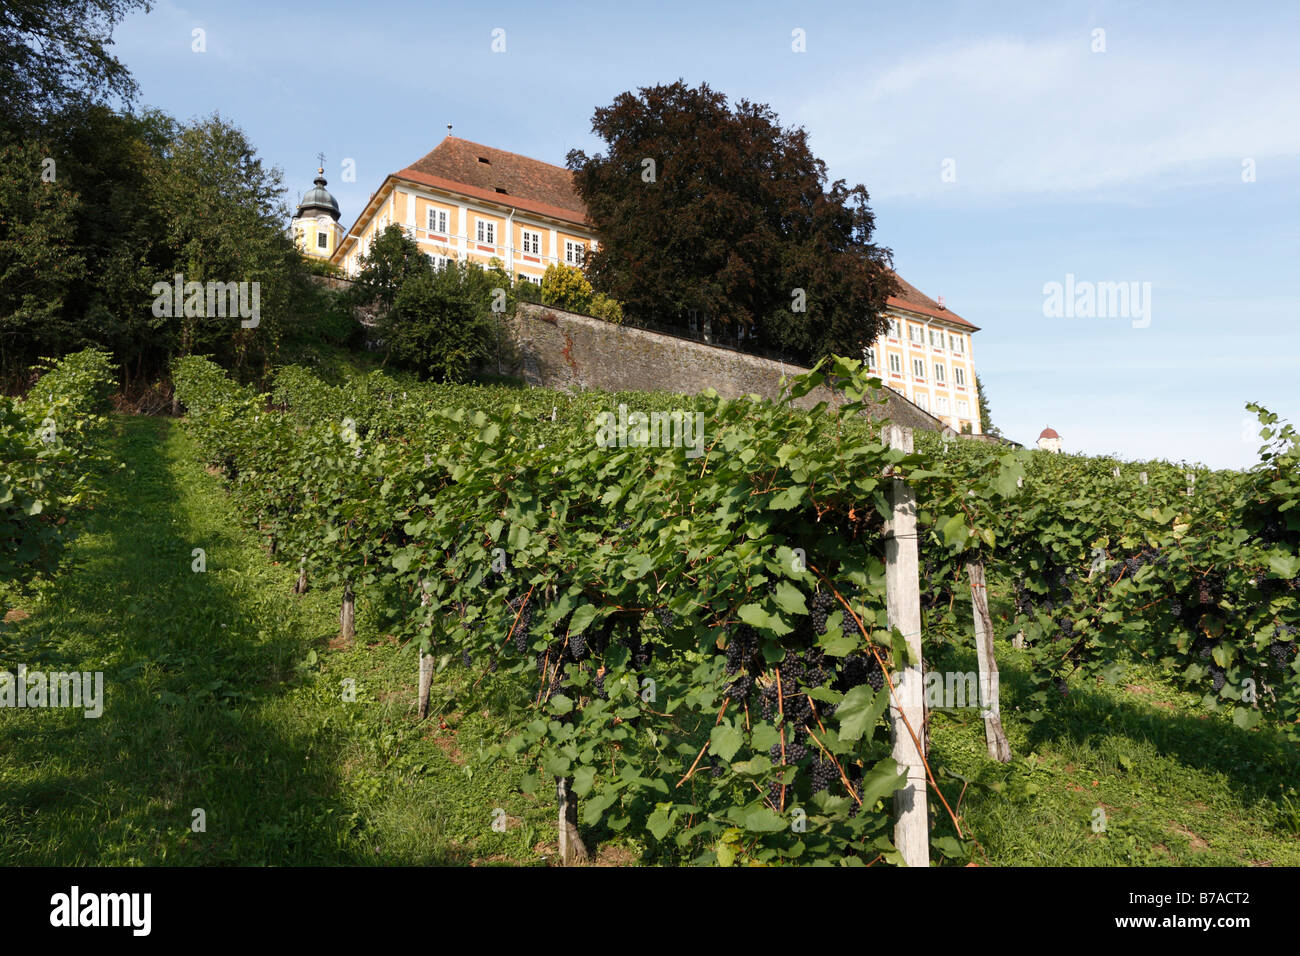 Vineyard at Stainz Palace, Schilcher Weinstrasse, Schilcher Wine Route, Styria, Austria, Europe Stock Photo